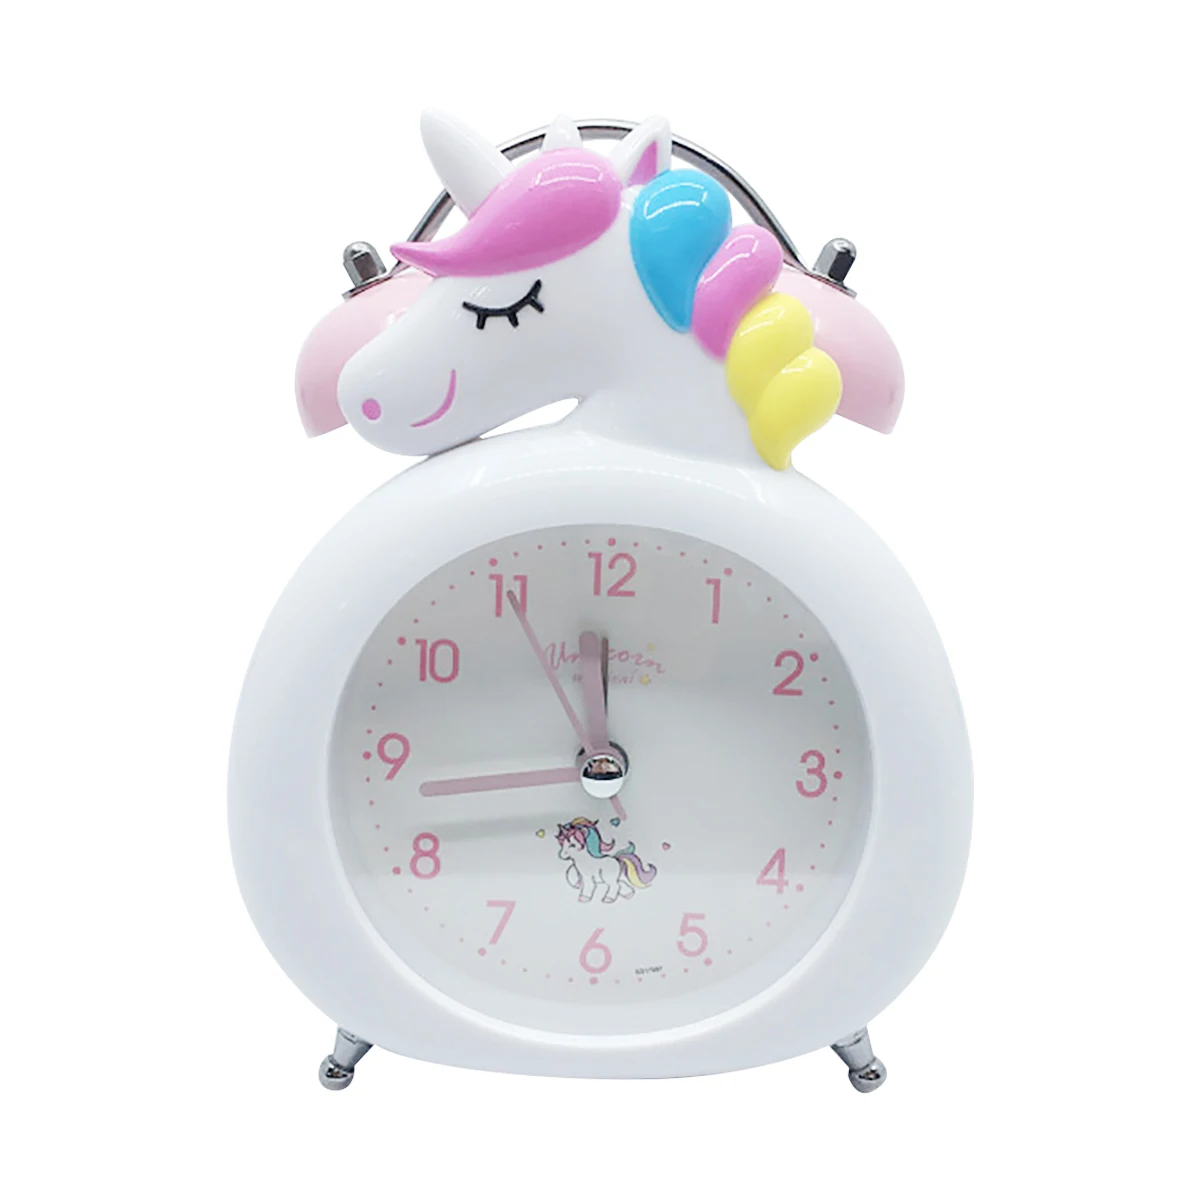 Temperature ... Bonamana Unicorn Alarm Clock Light Nightlight Accessories-Time 